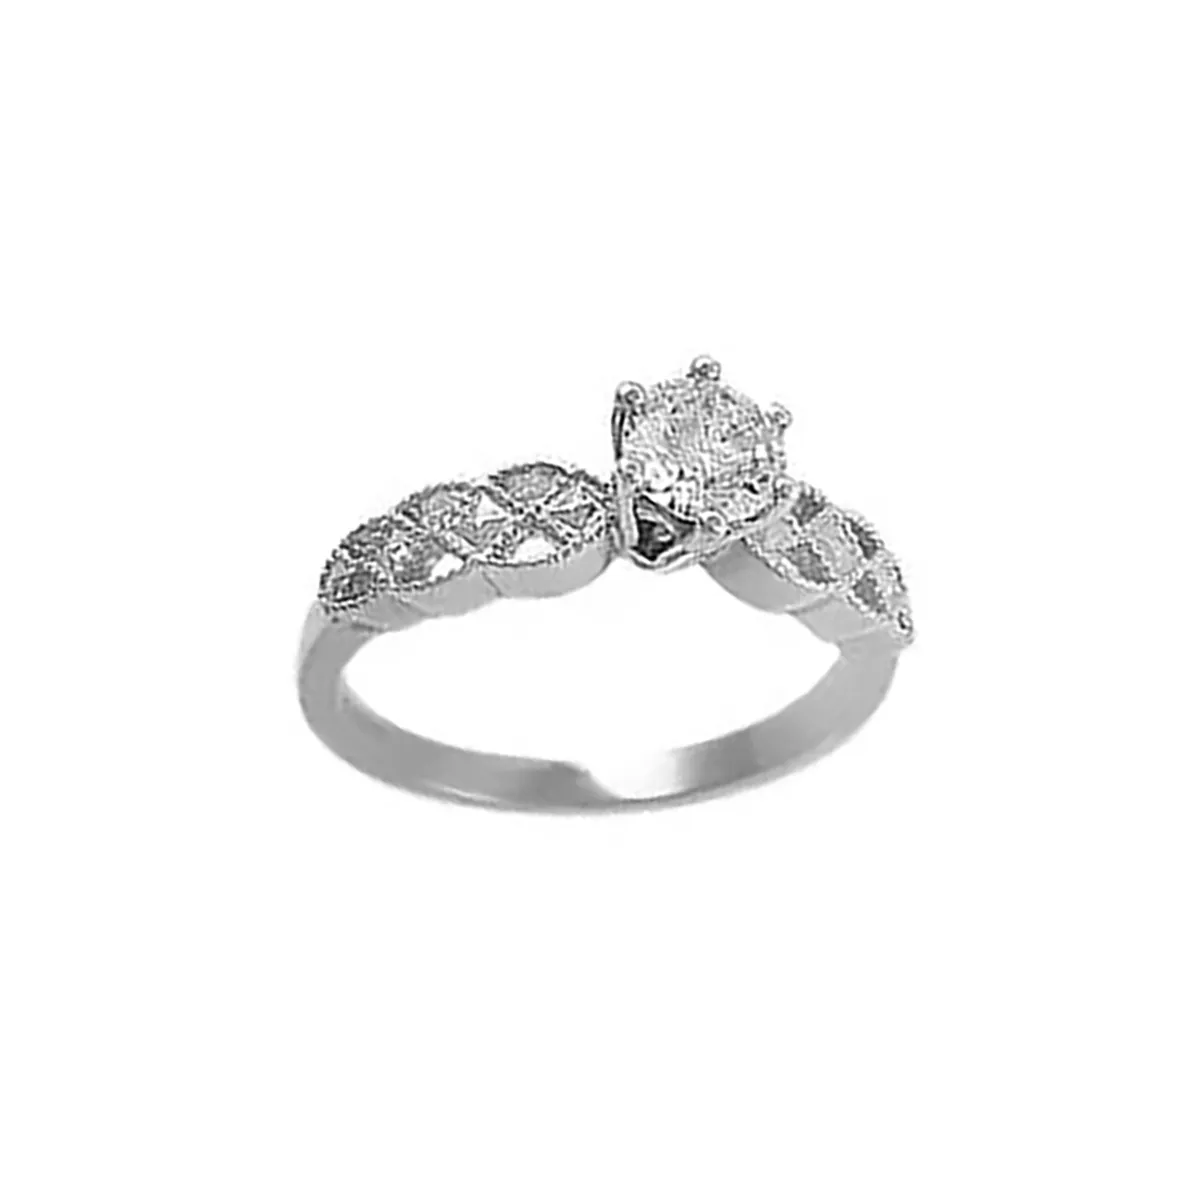 1celtic_wedding_ring_diamond_CL0294